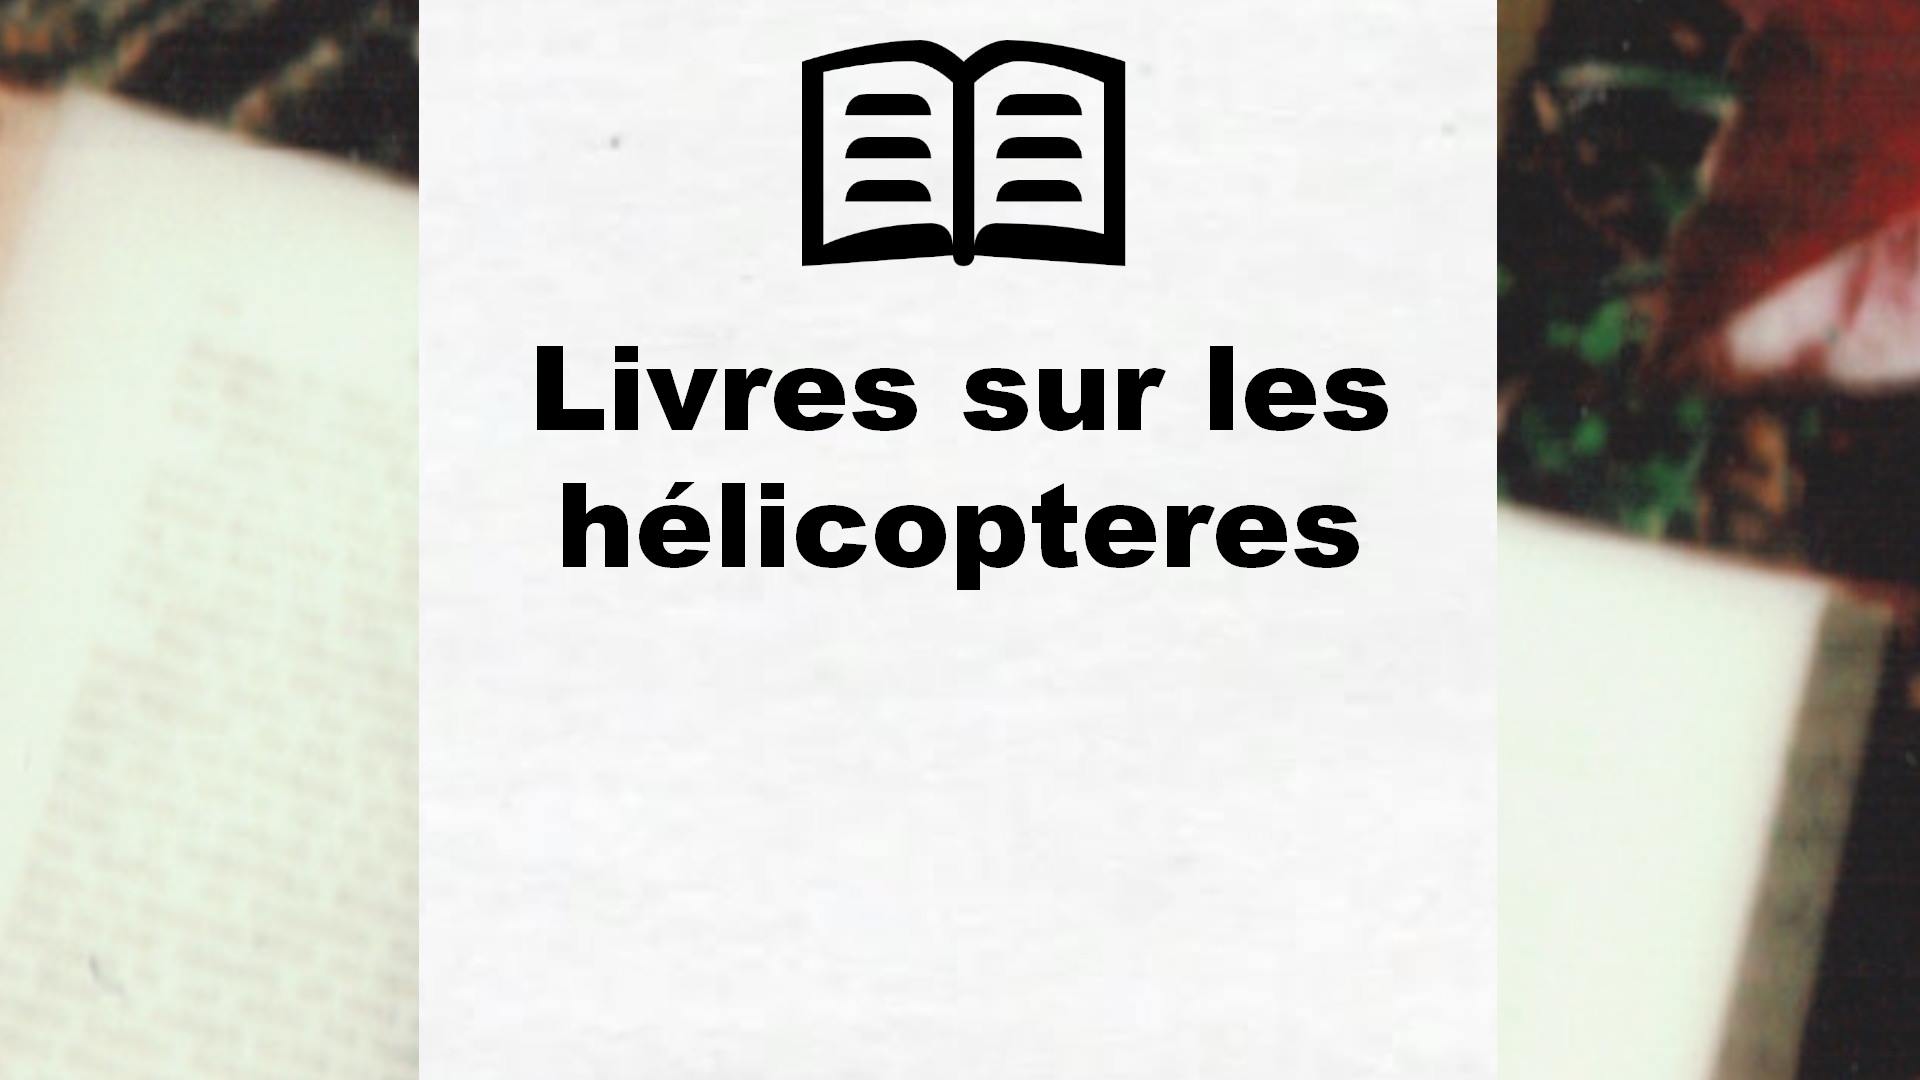 Livres sur les hélicopteres